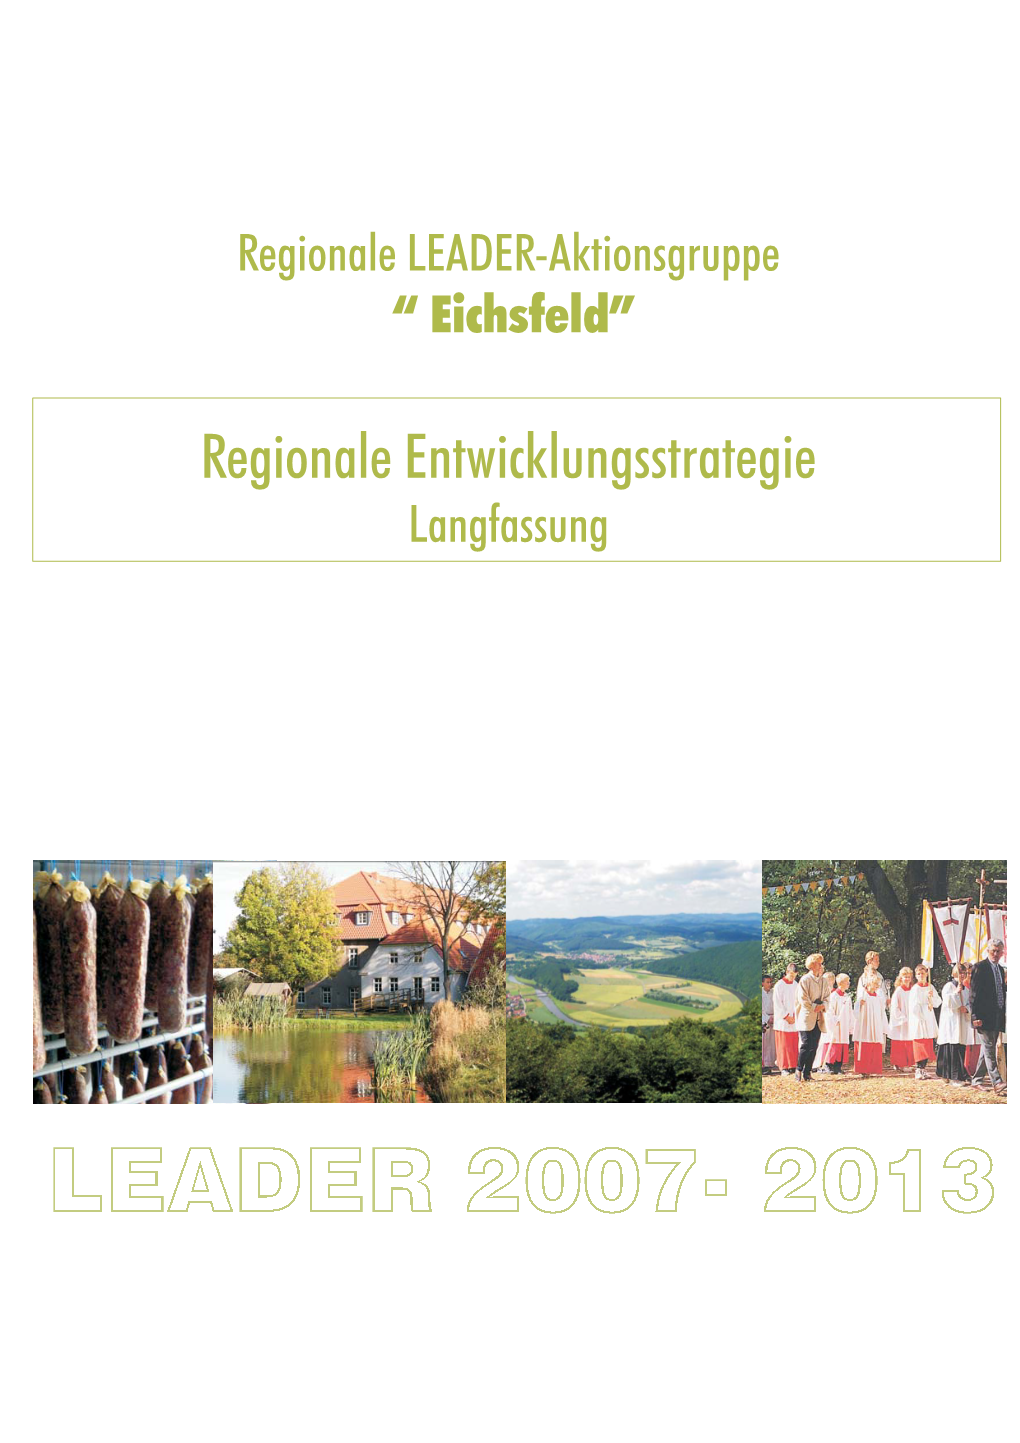 Regionale Entwicklungsstrategie Langfassung Regionale Entwicklungsstrategie Der RAG Eichsfeld